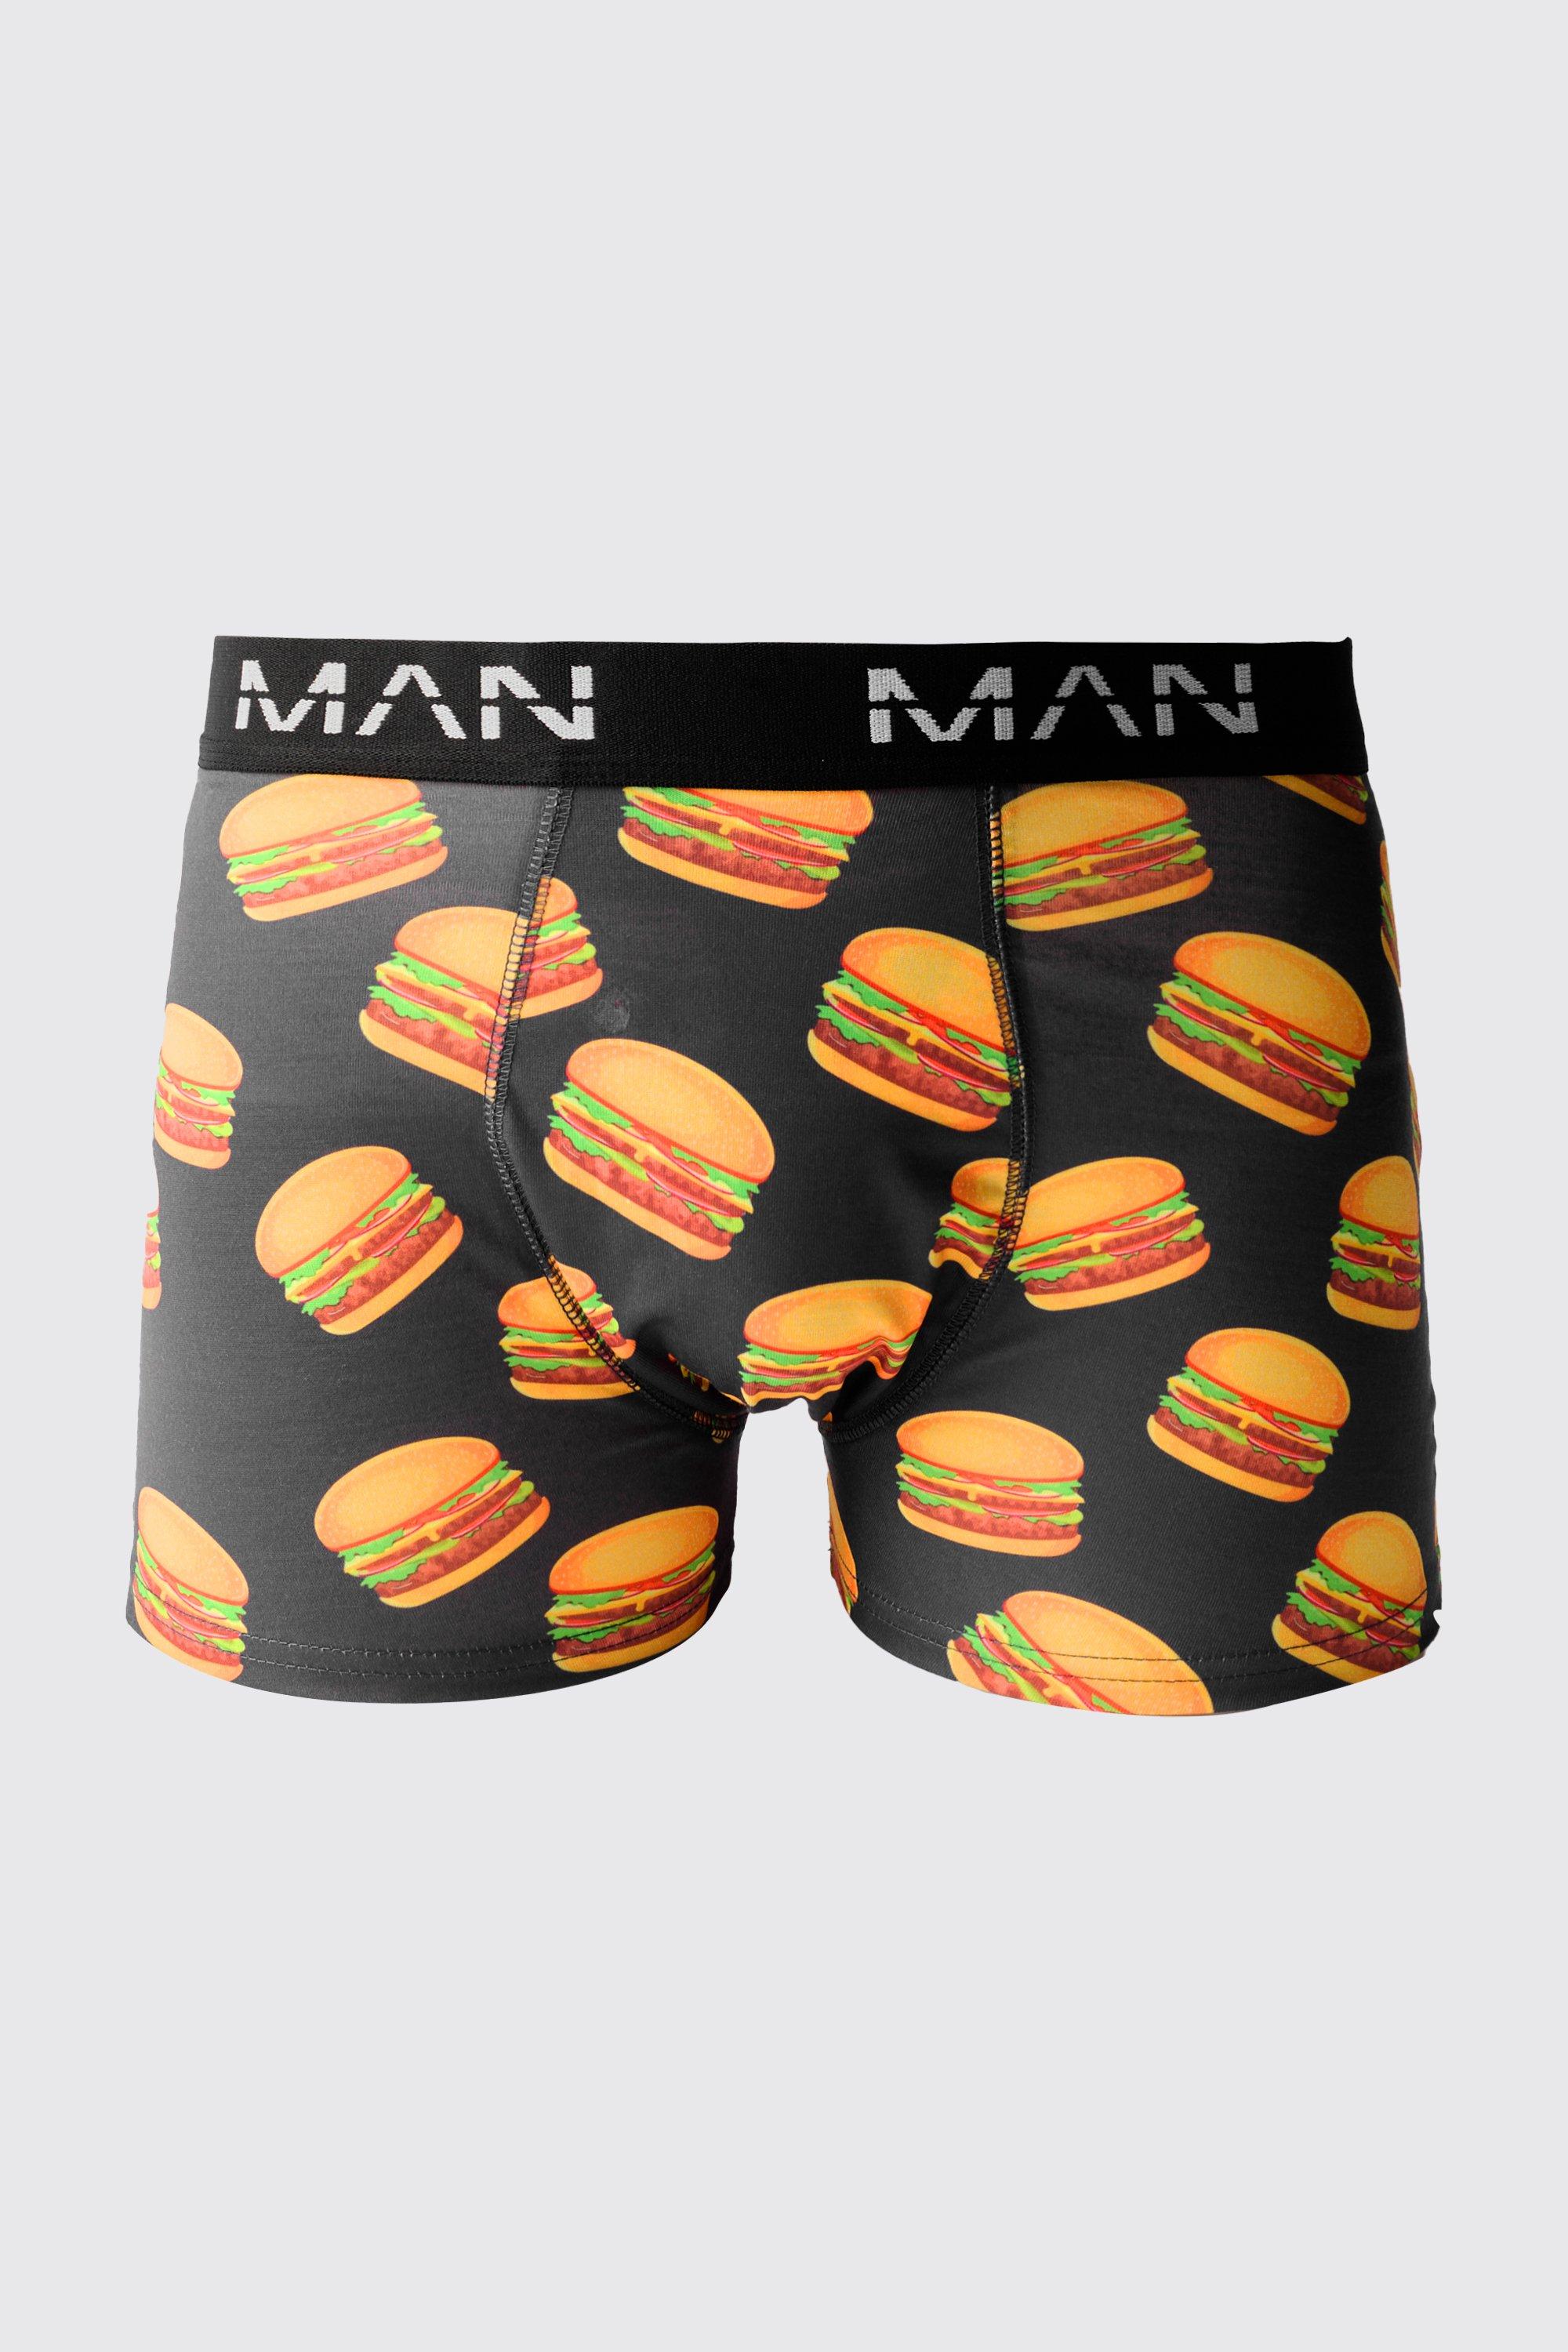 Mens Multi Man Burger Printed Boxers, Multi